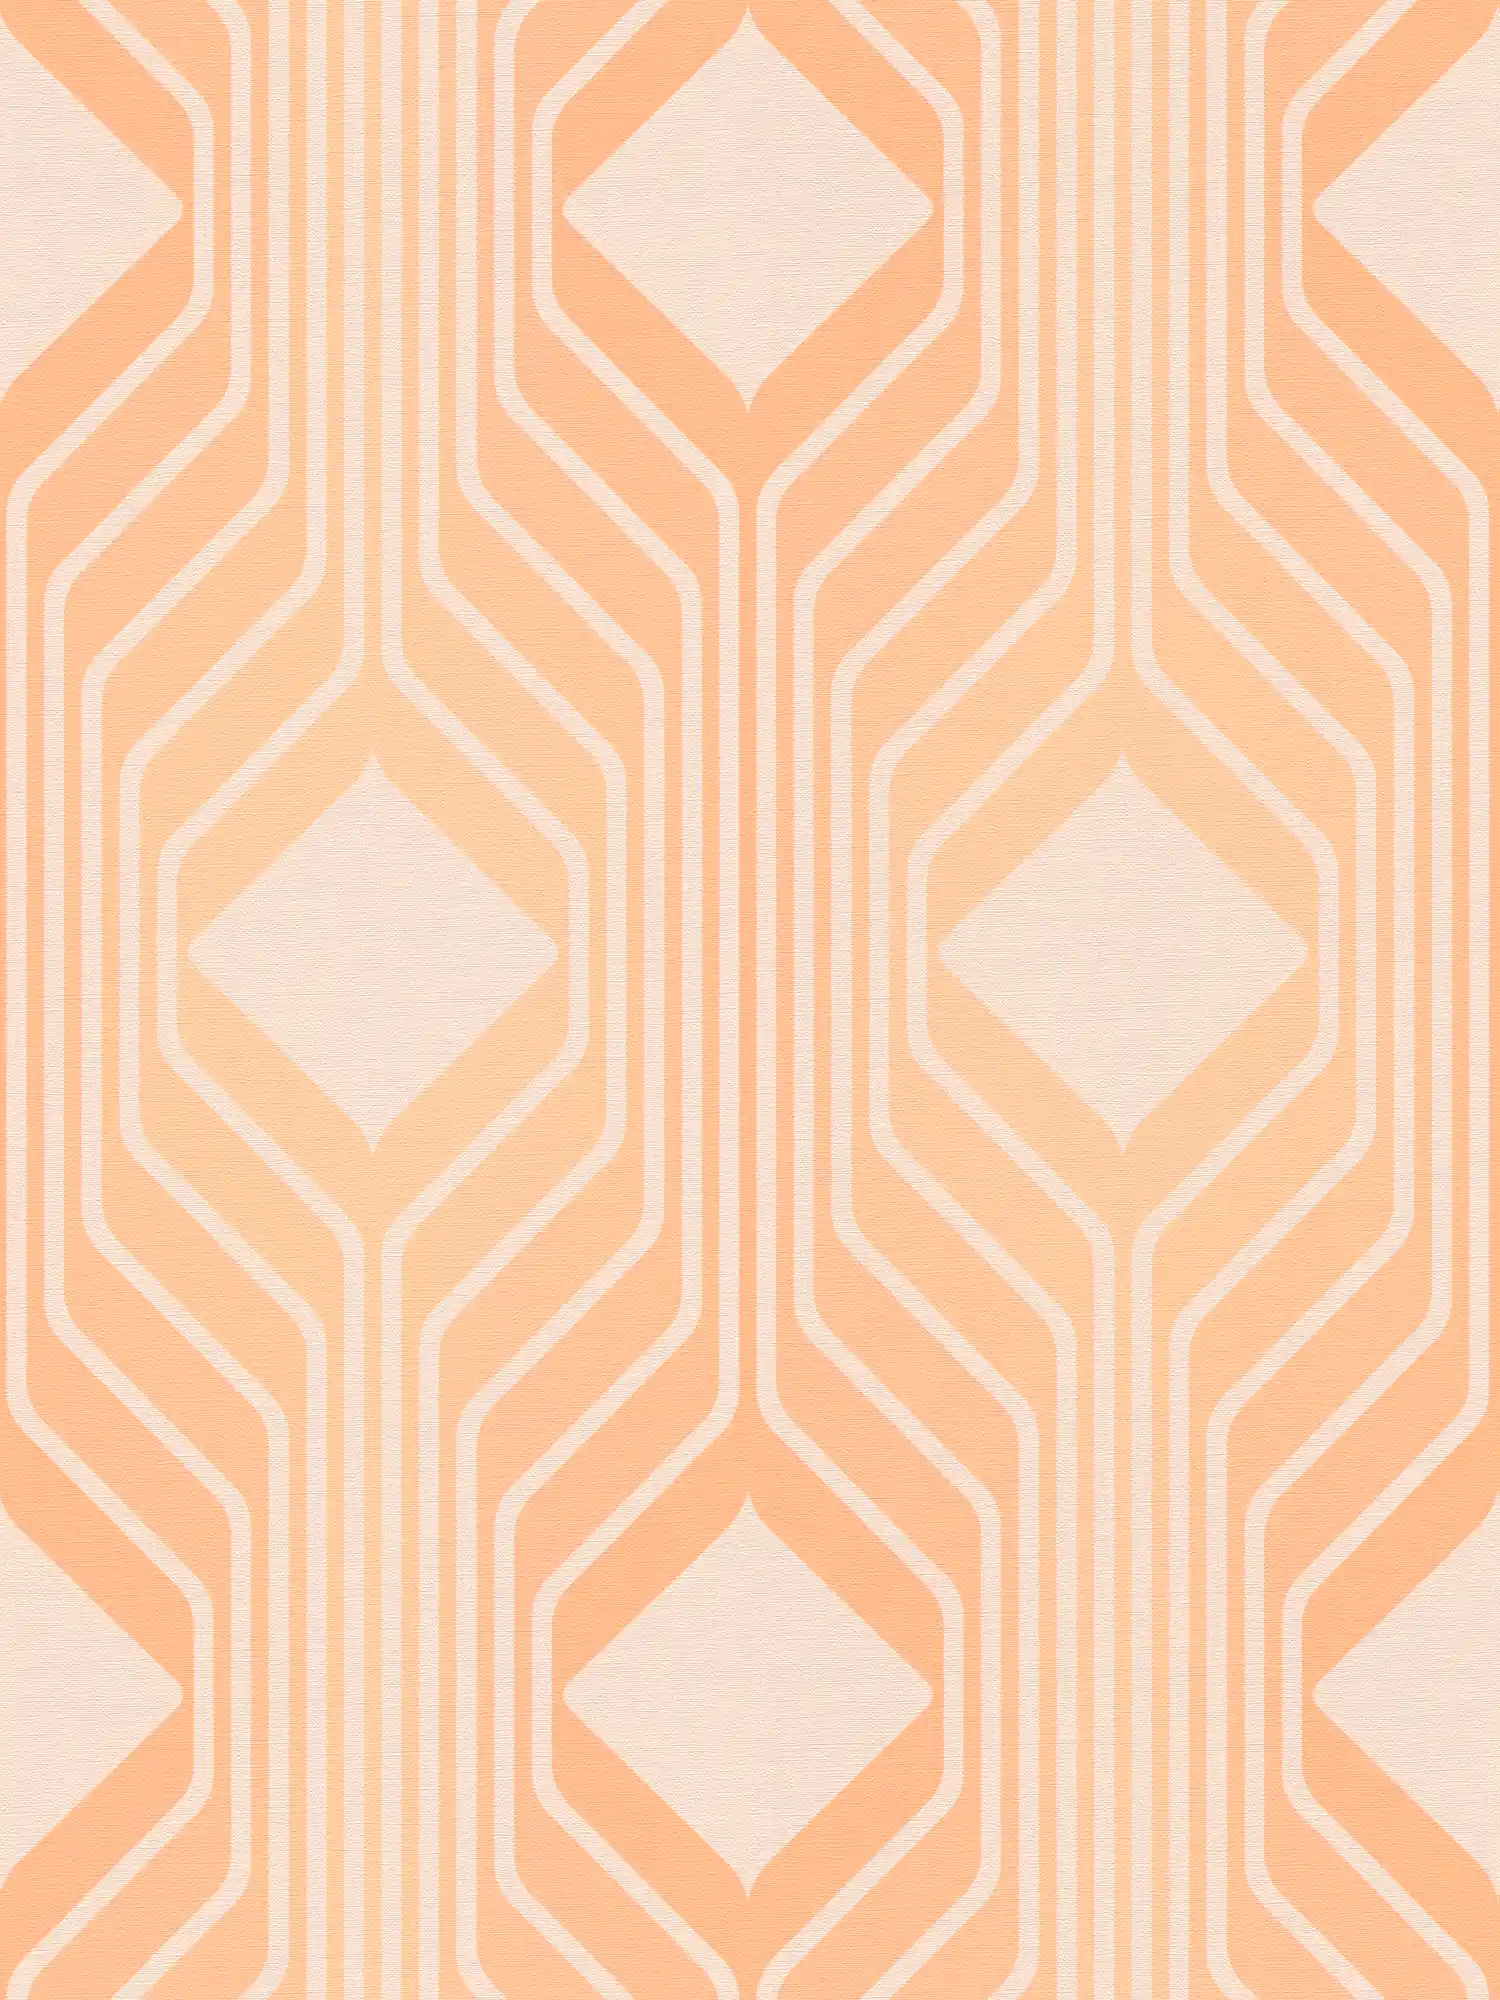         Retro Tapete mit Rauten Bemusterung in warmen Farben – Orange, Beige
    